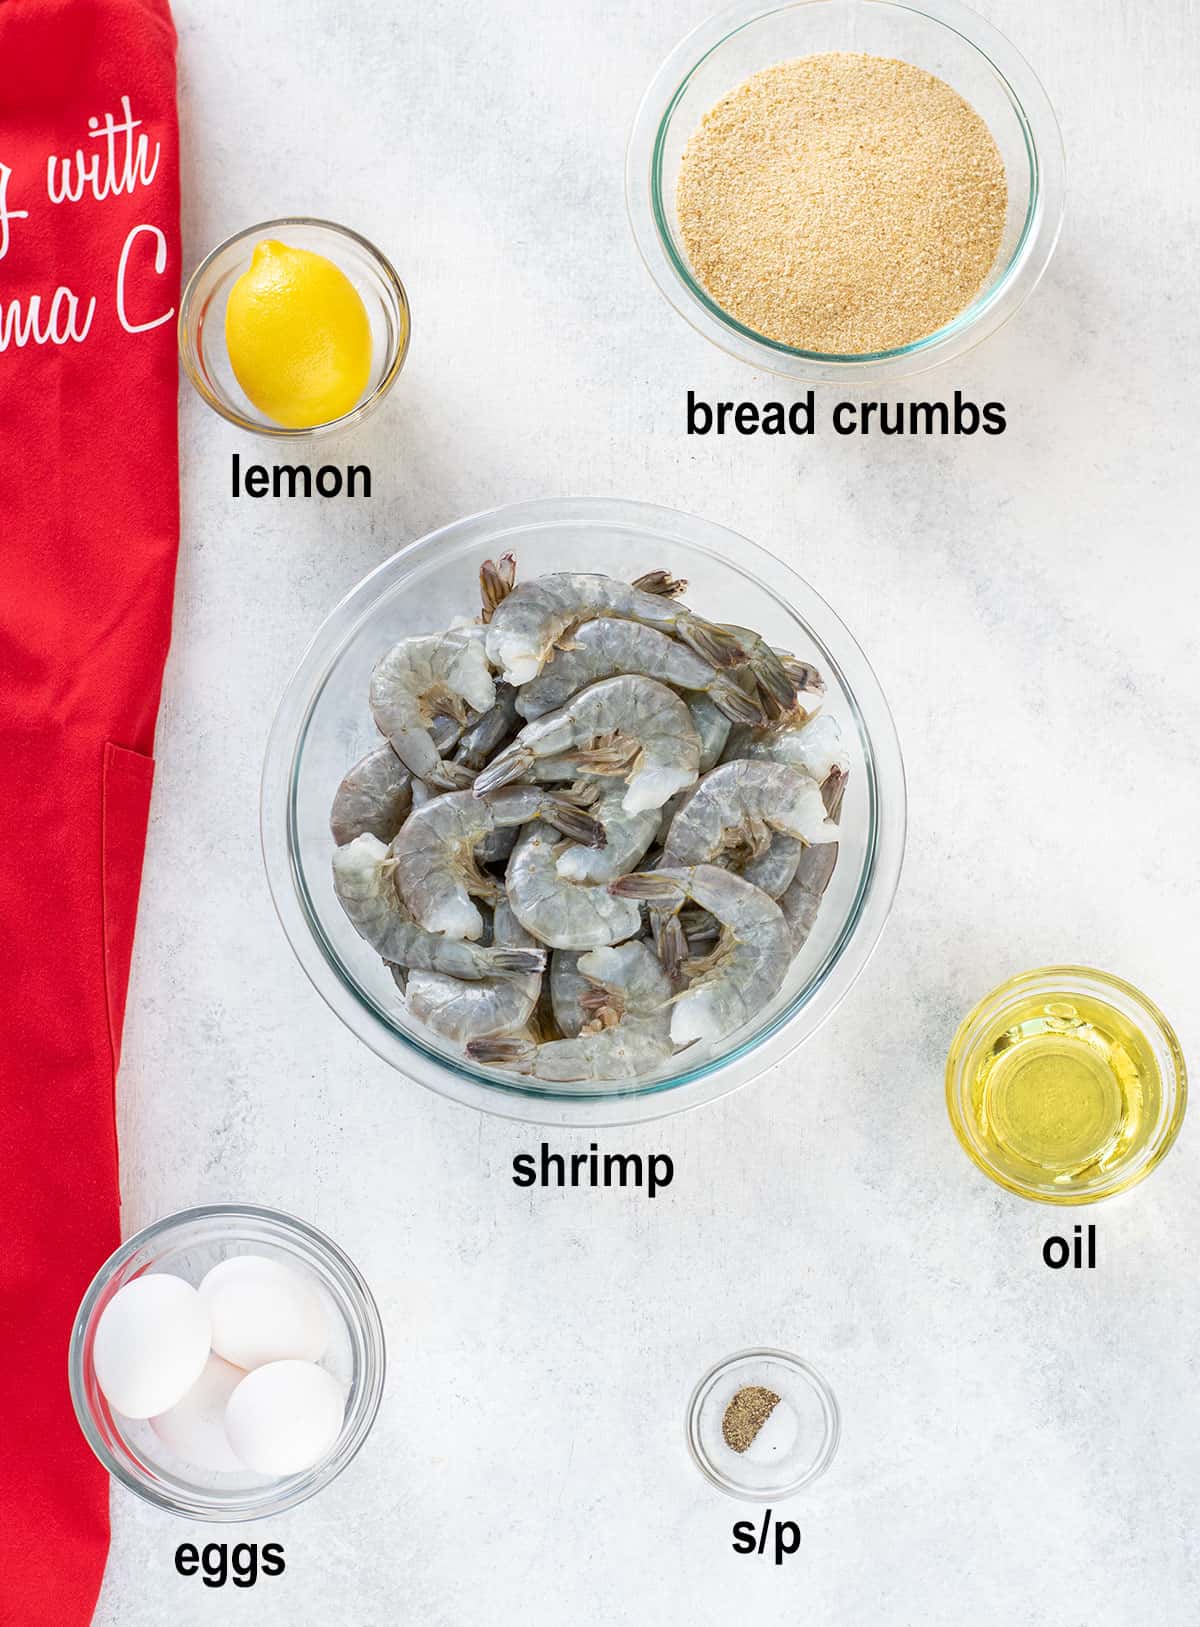 lemon, bread crumbs, shrimp, oil, eggs, salt, pepper